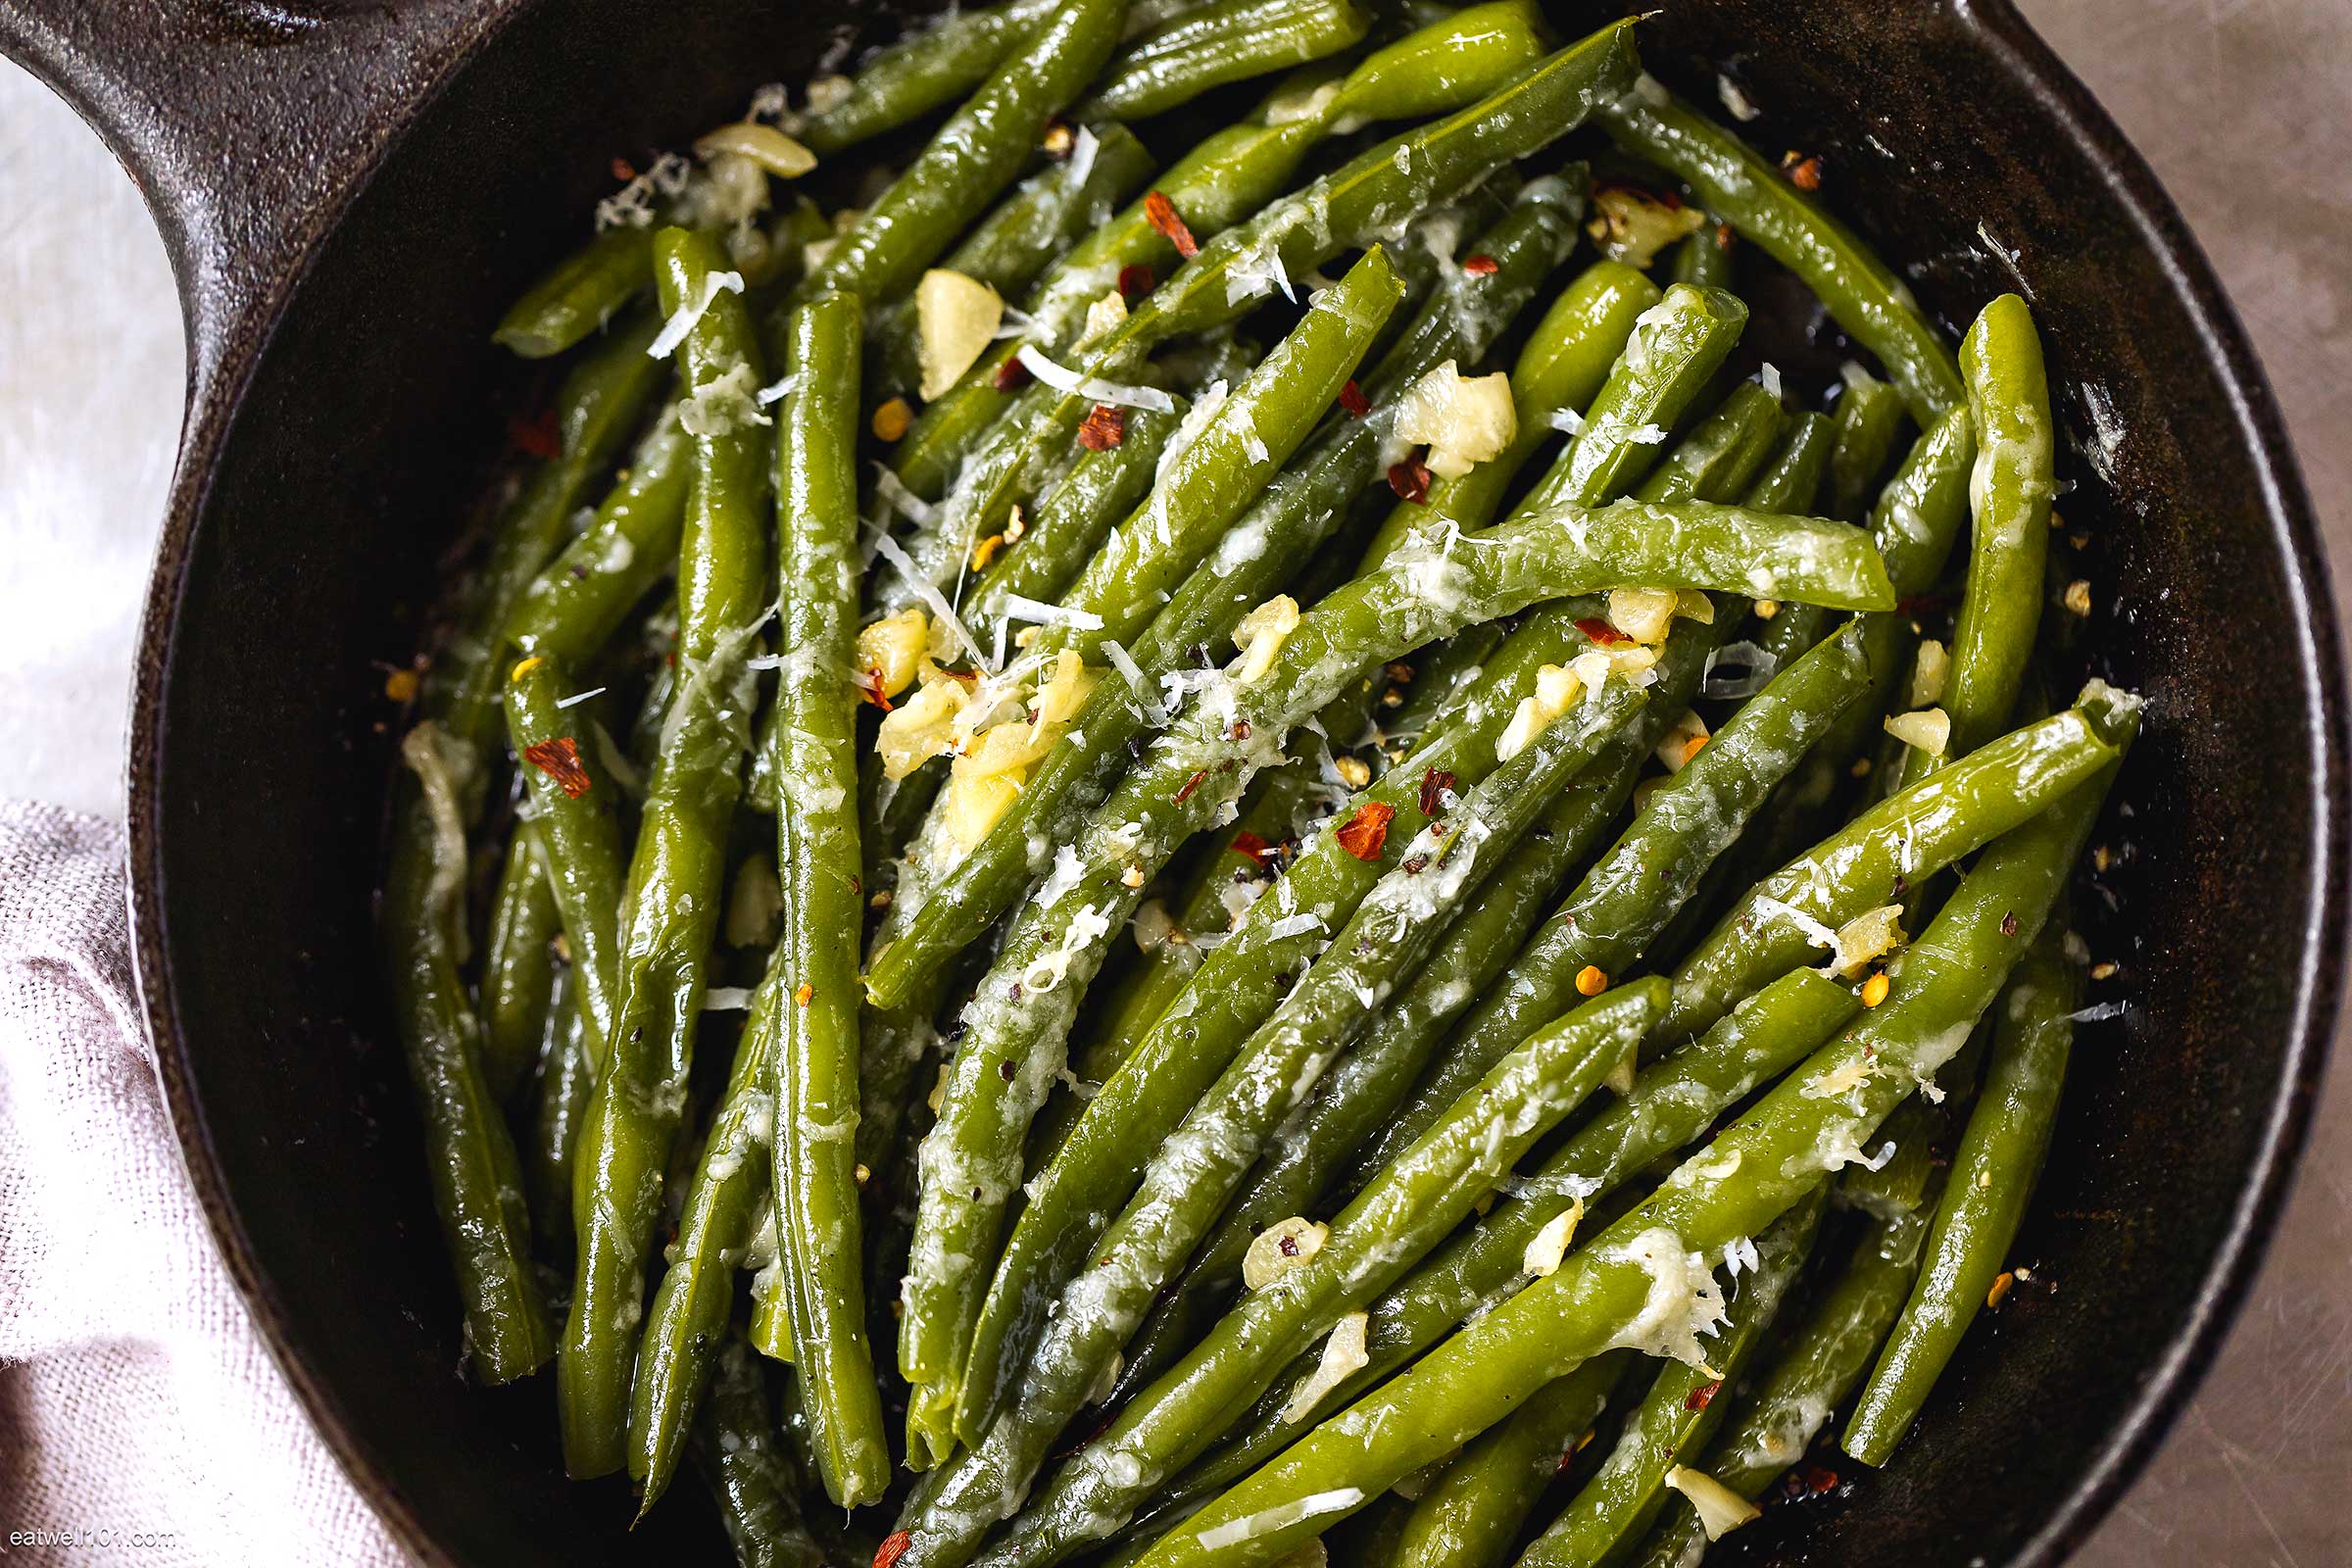 Garlic Green Beans (Easy Frozen Green Beans Recipe) - Eat Well Spend Smart